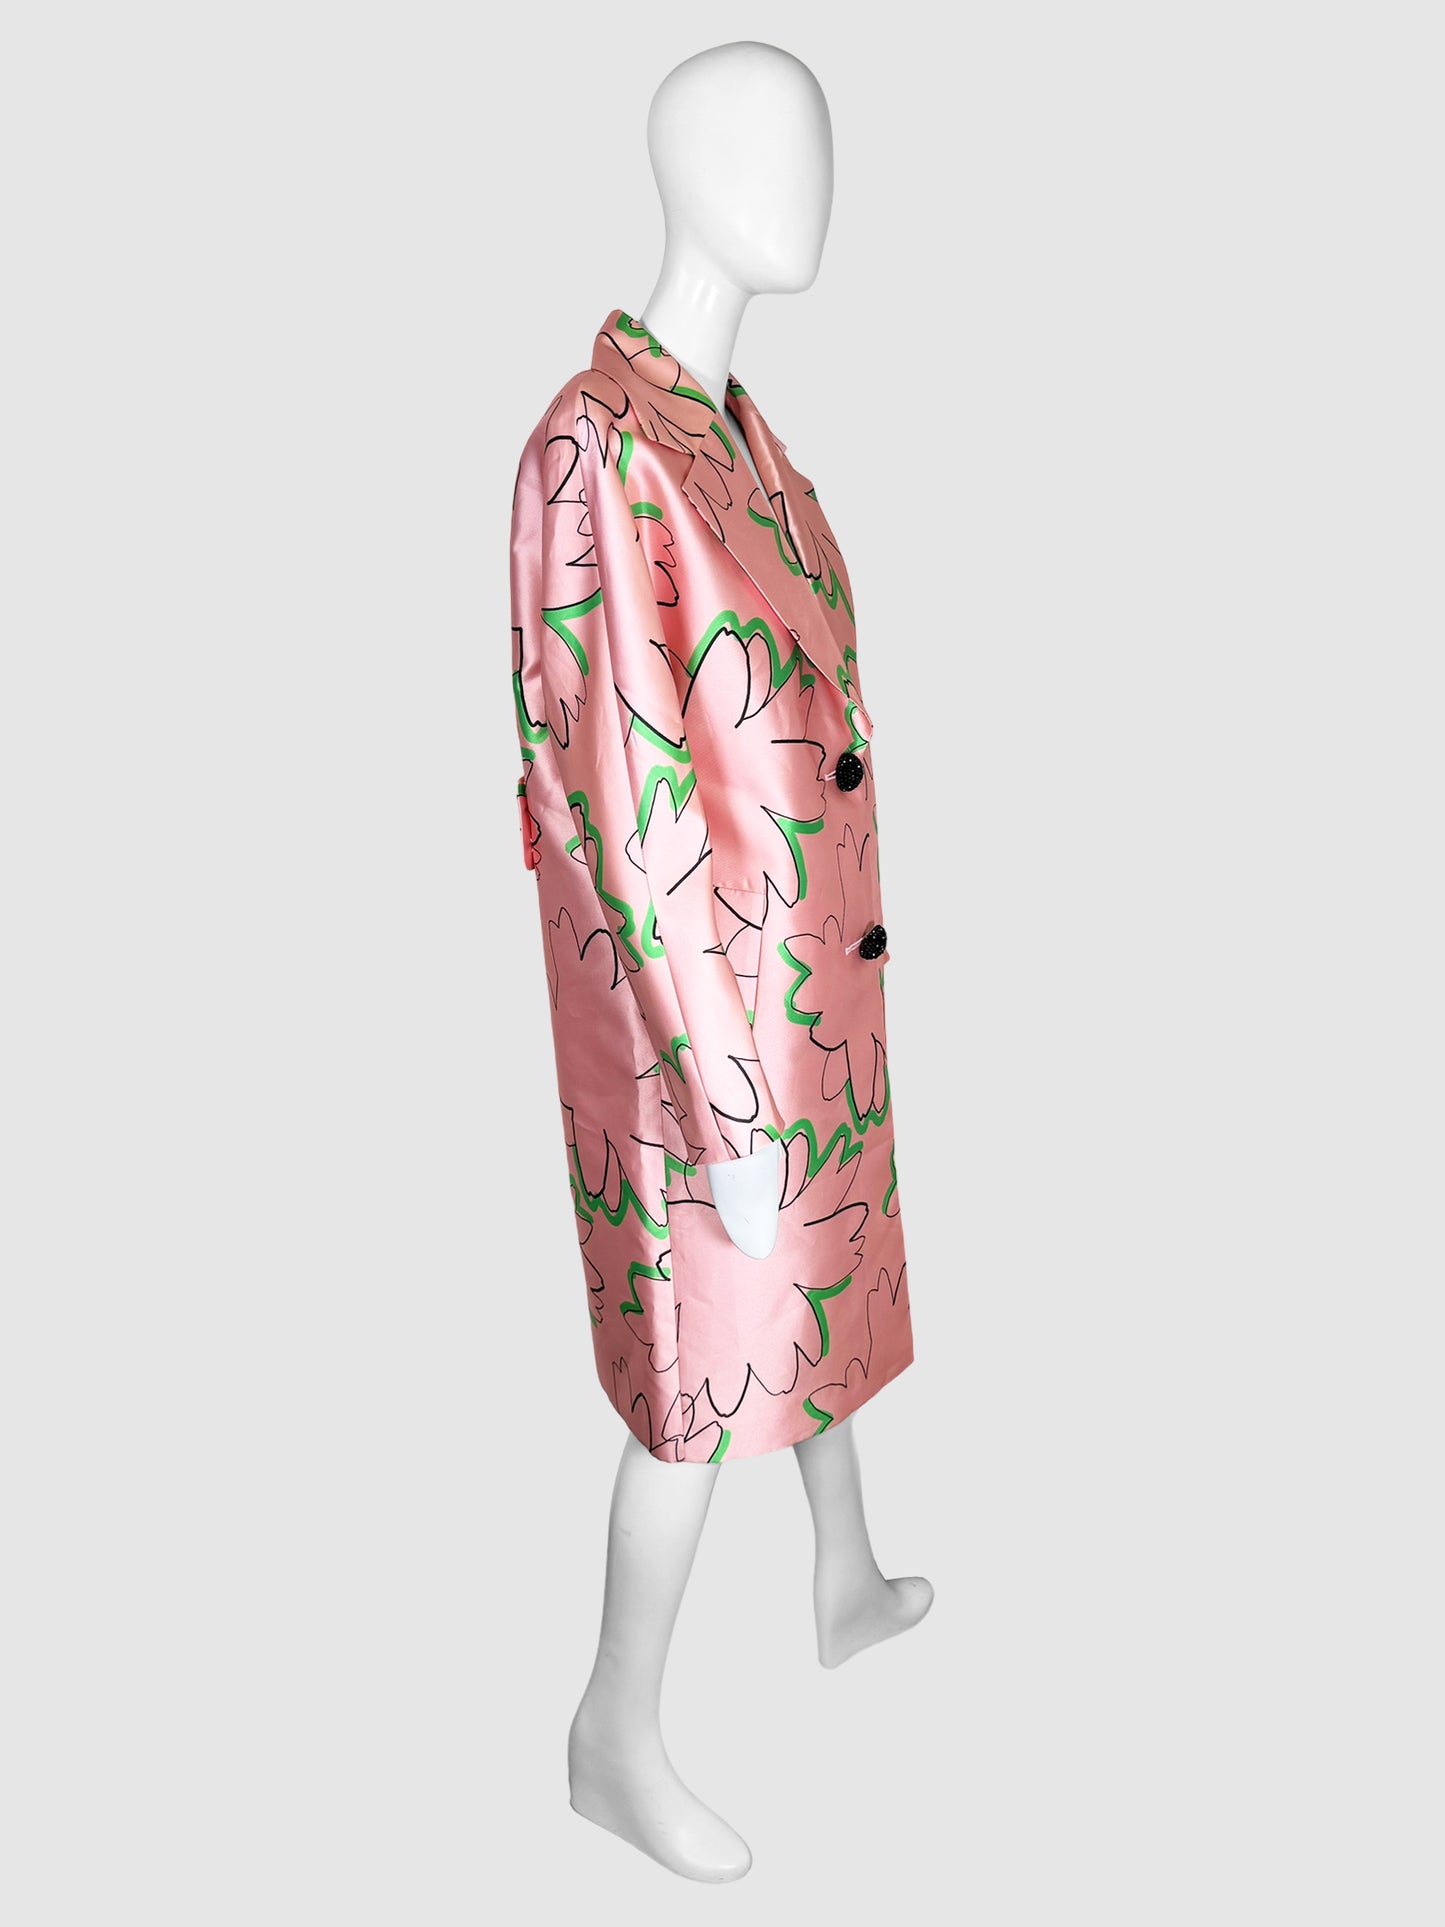 Cardea Floral Print Coat - Size M